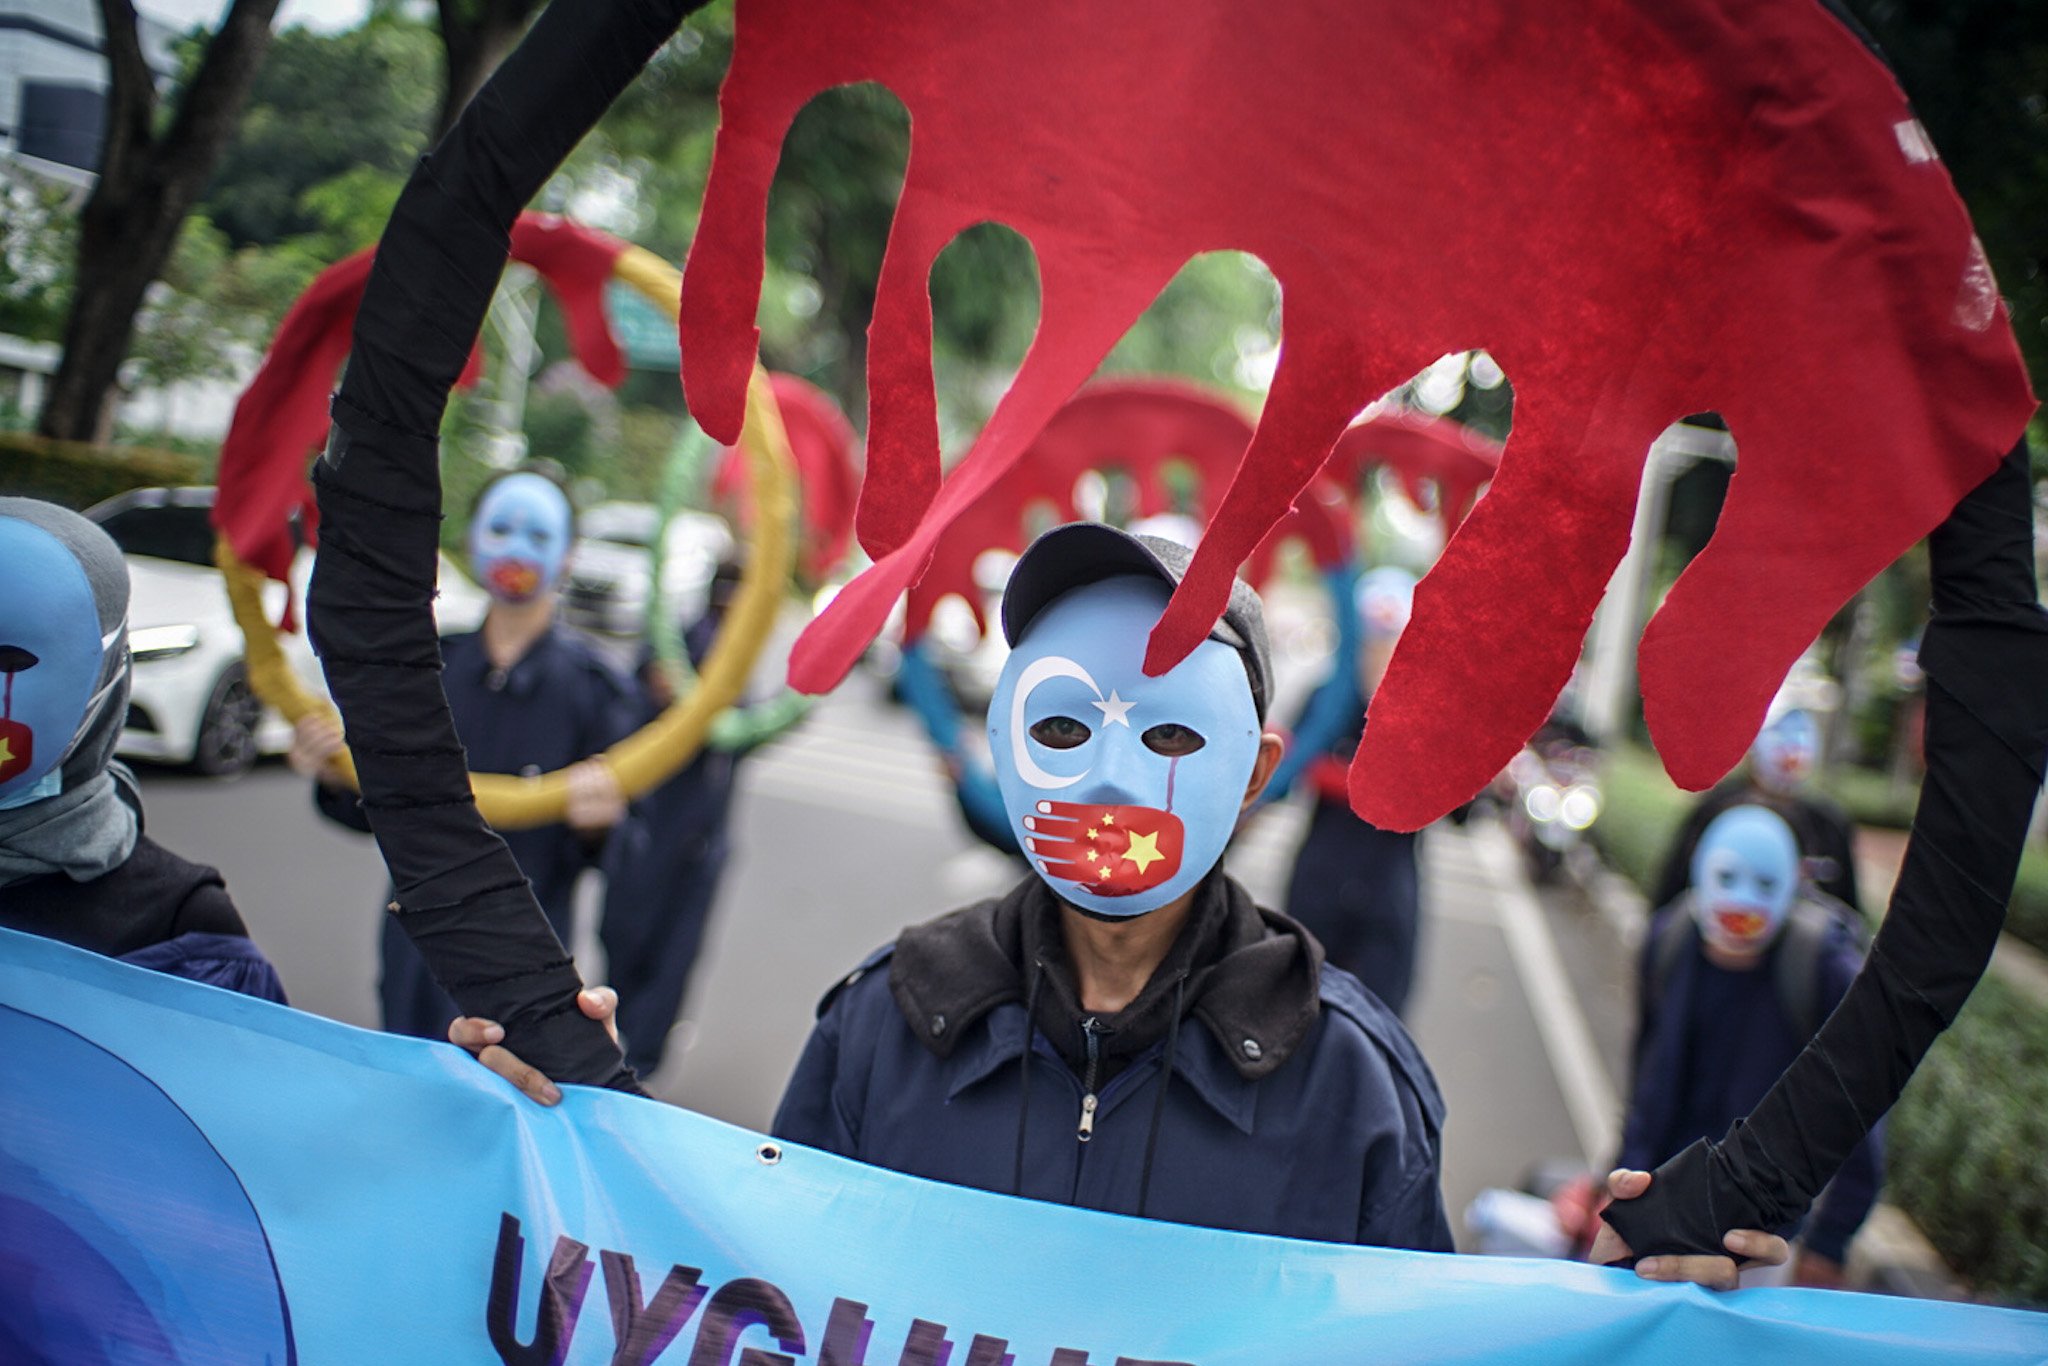 Massa aksi menggunakan topeng etnis Uyghur melakukan aksi damai di depan Gedung Kemenpora RI, Jakarta, Jumat (25/6/2021). Selama unjuk rasa massa aksi menuntut Kemenpora untuk memboikot Olimpiade Beijing 2022.